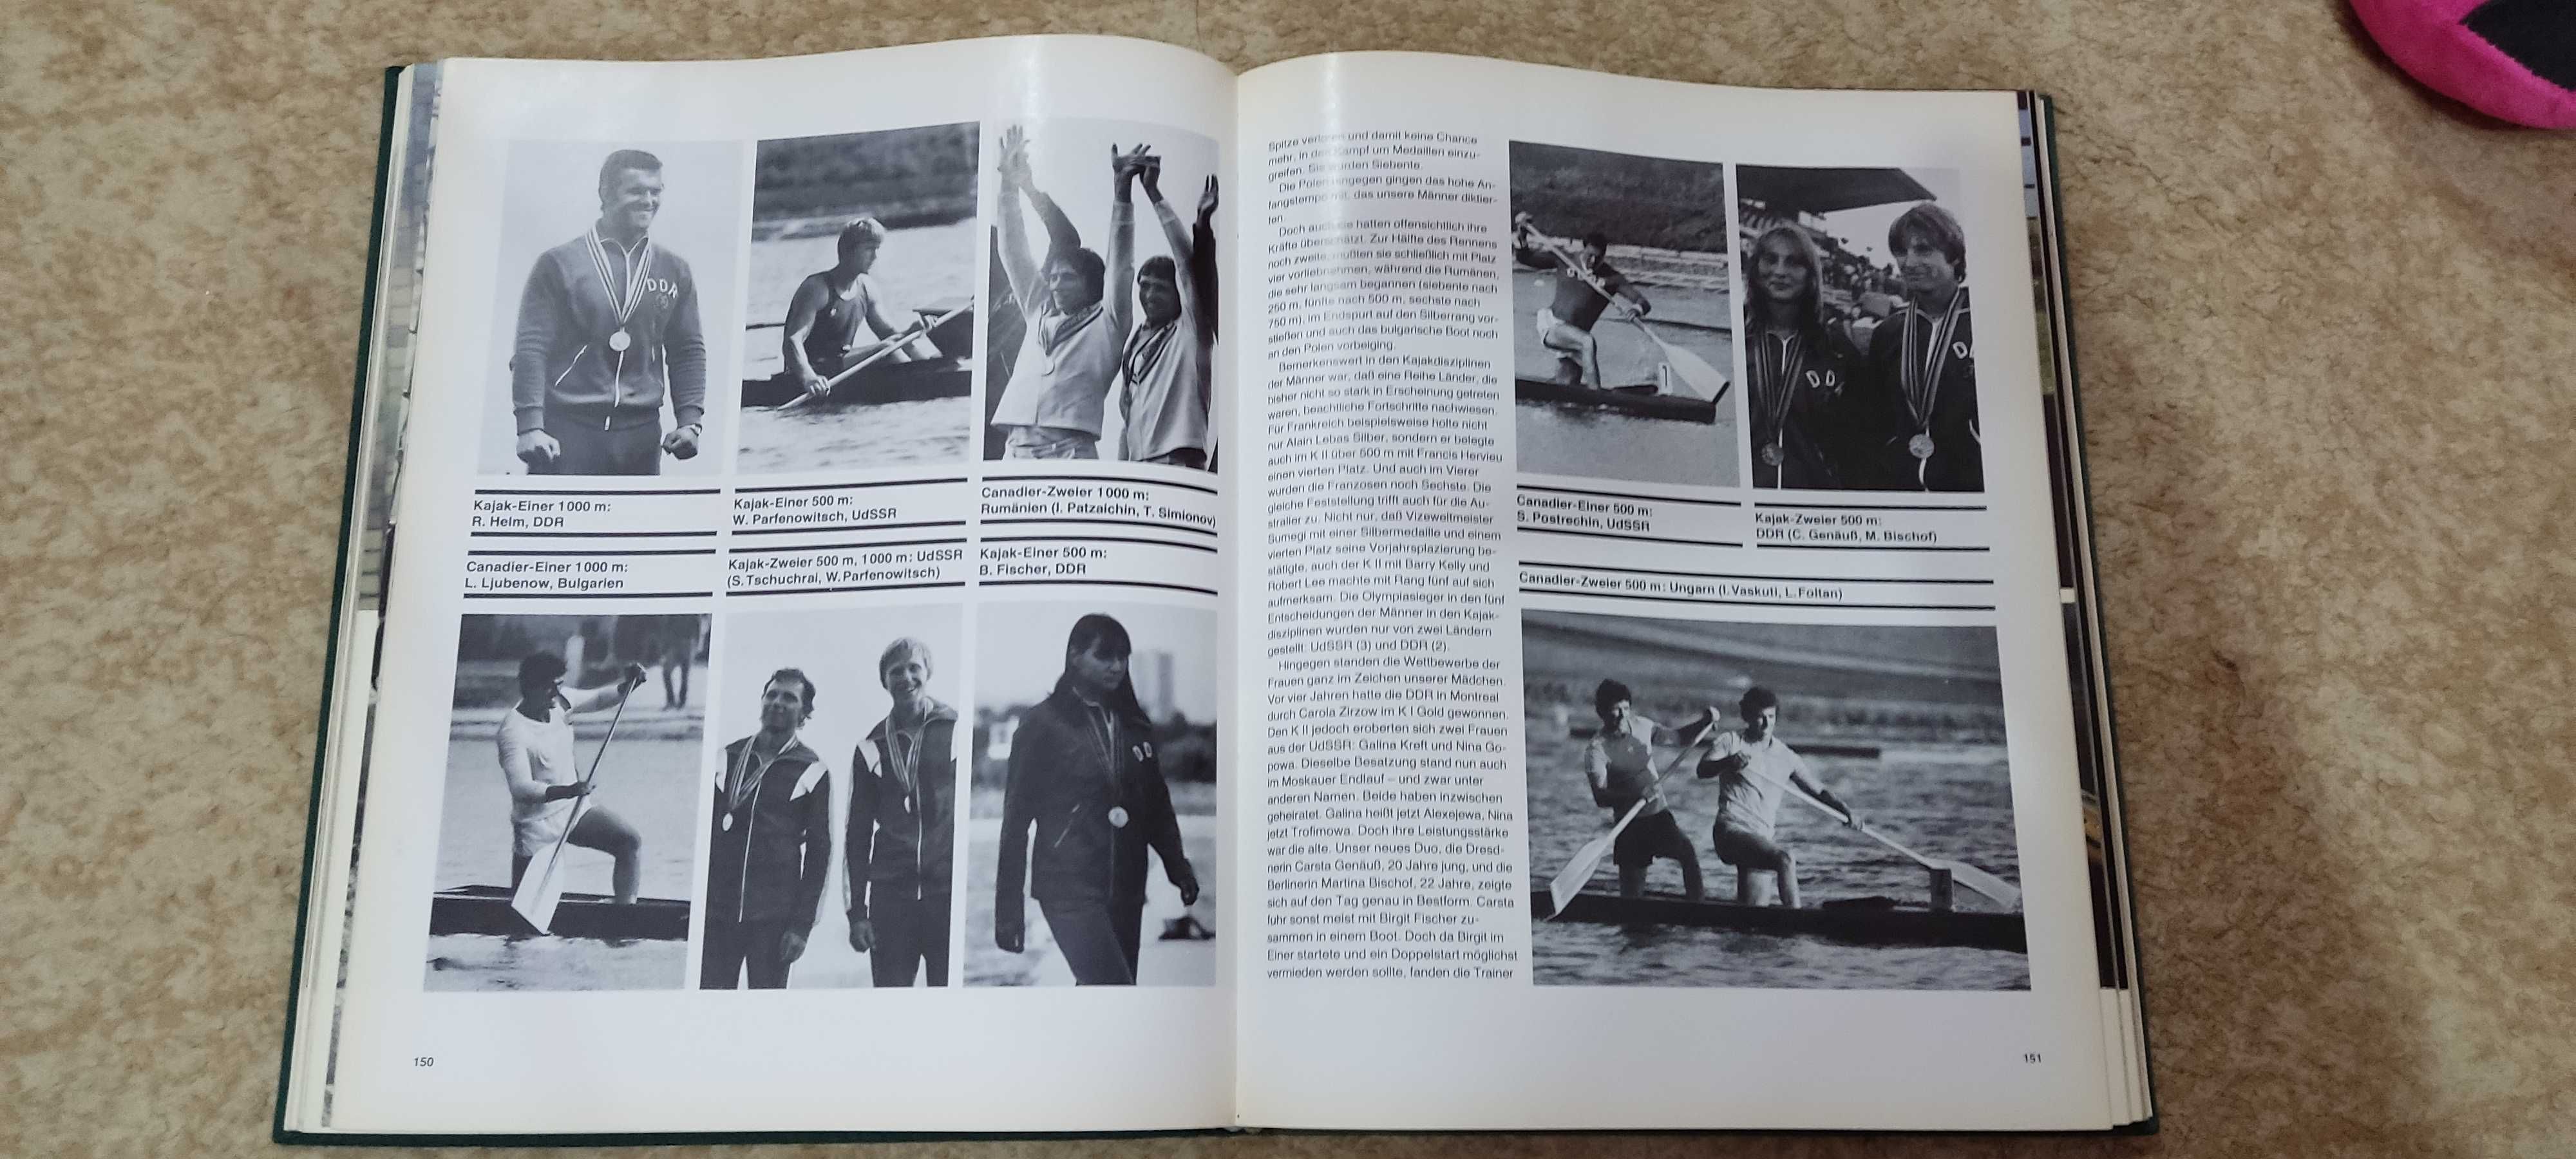 Продается книга об олимпиаде в СССР в 1980 году,на немецком языке